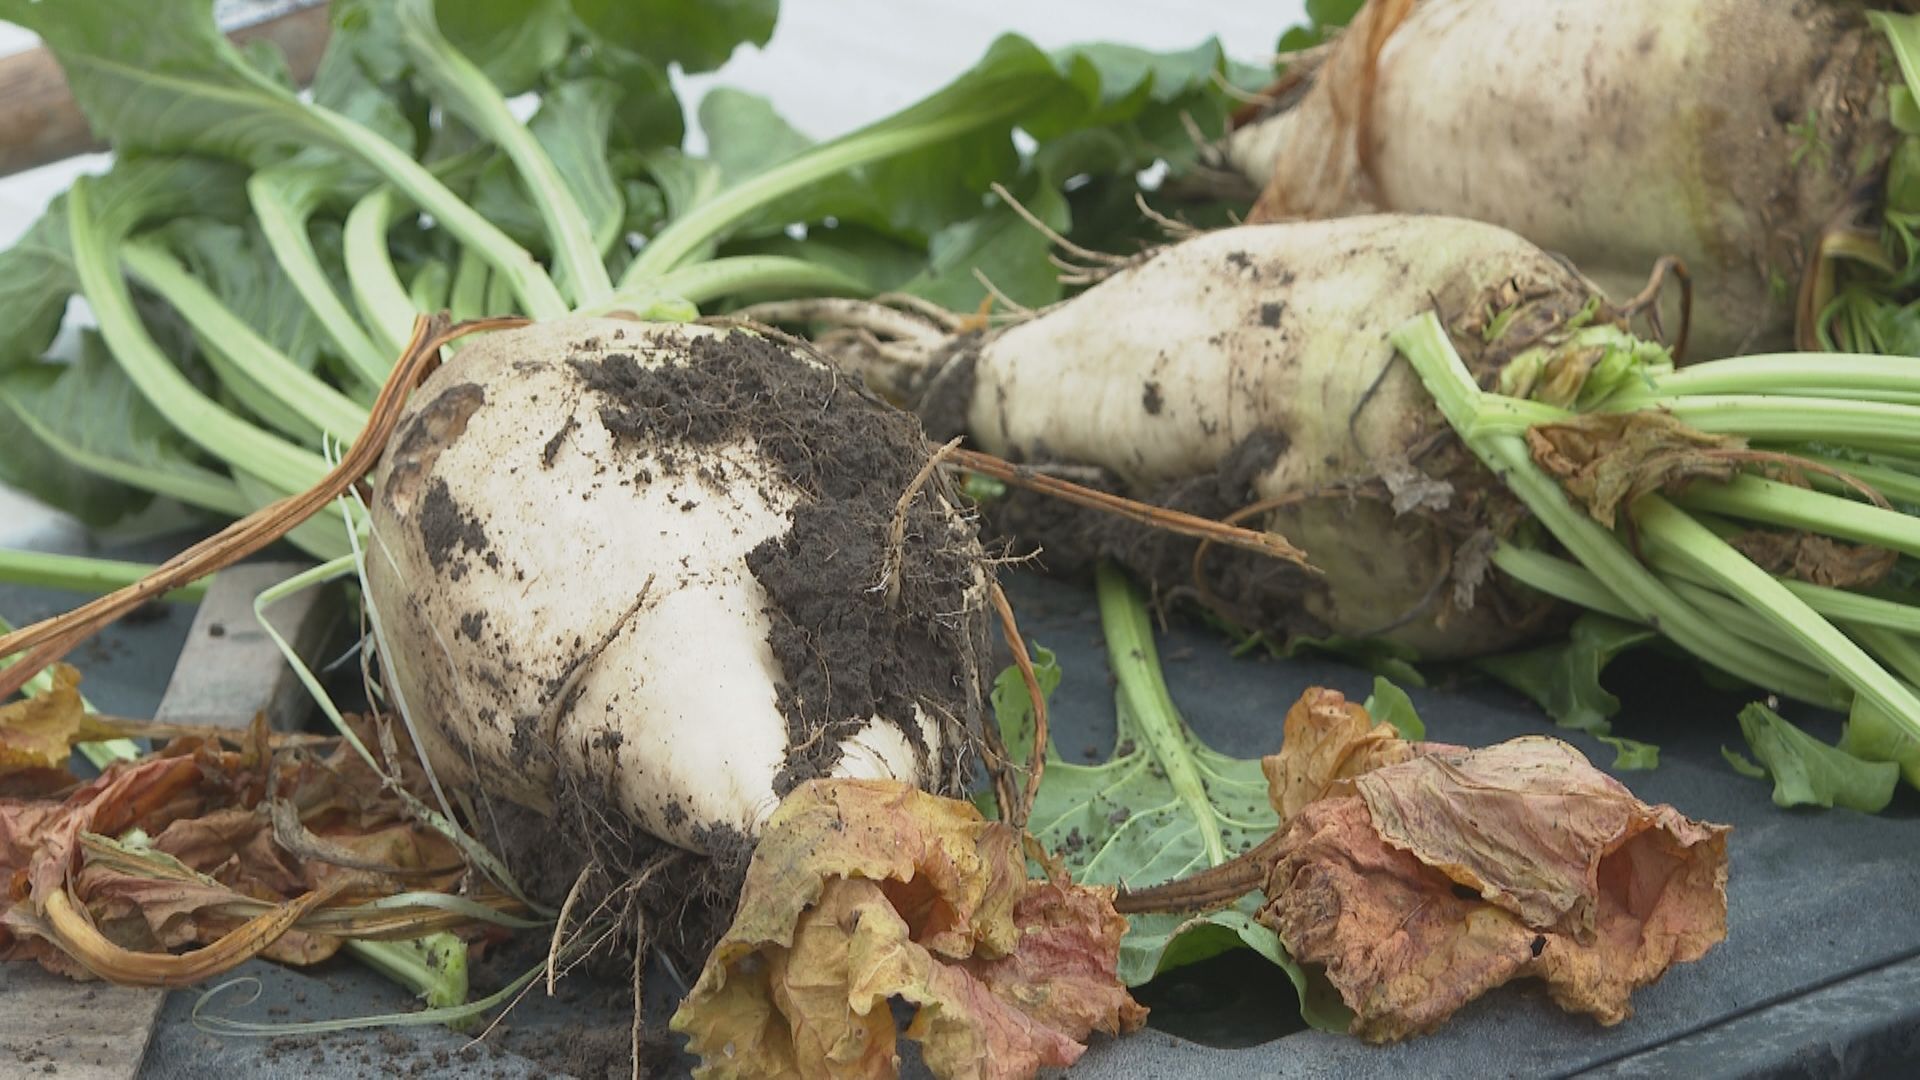 Sweet year for Alberta sugar beet growers